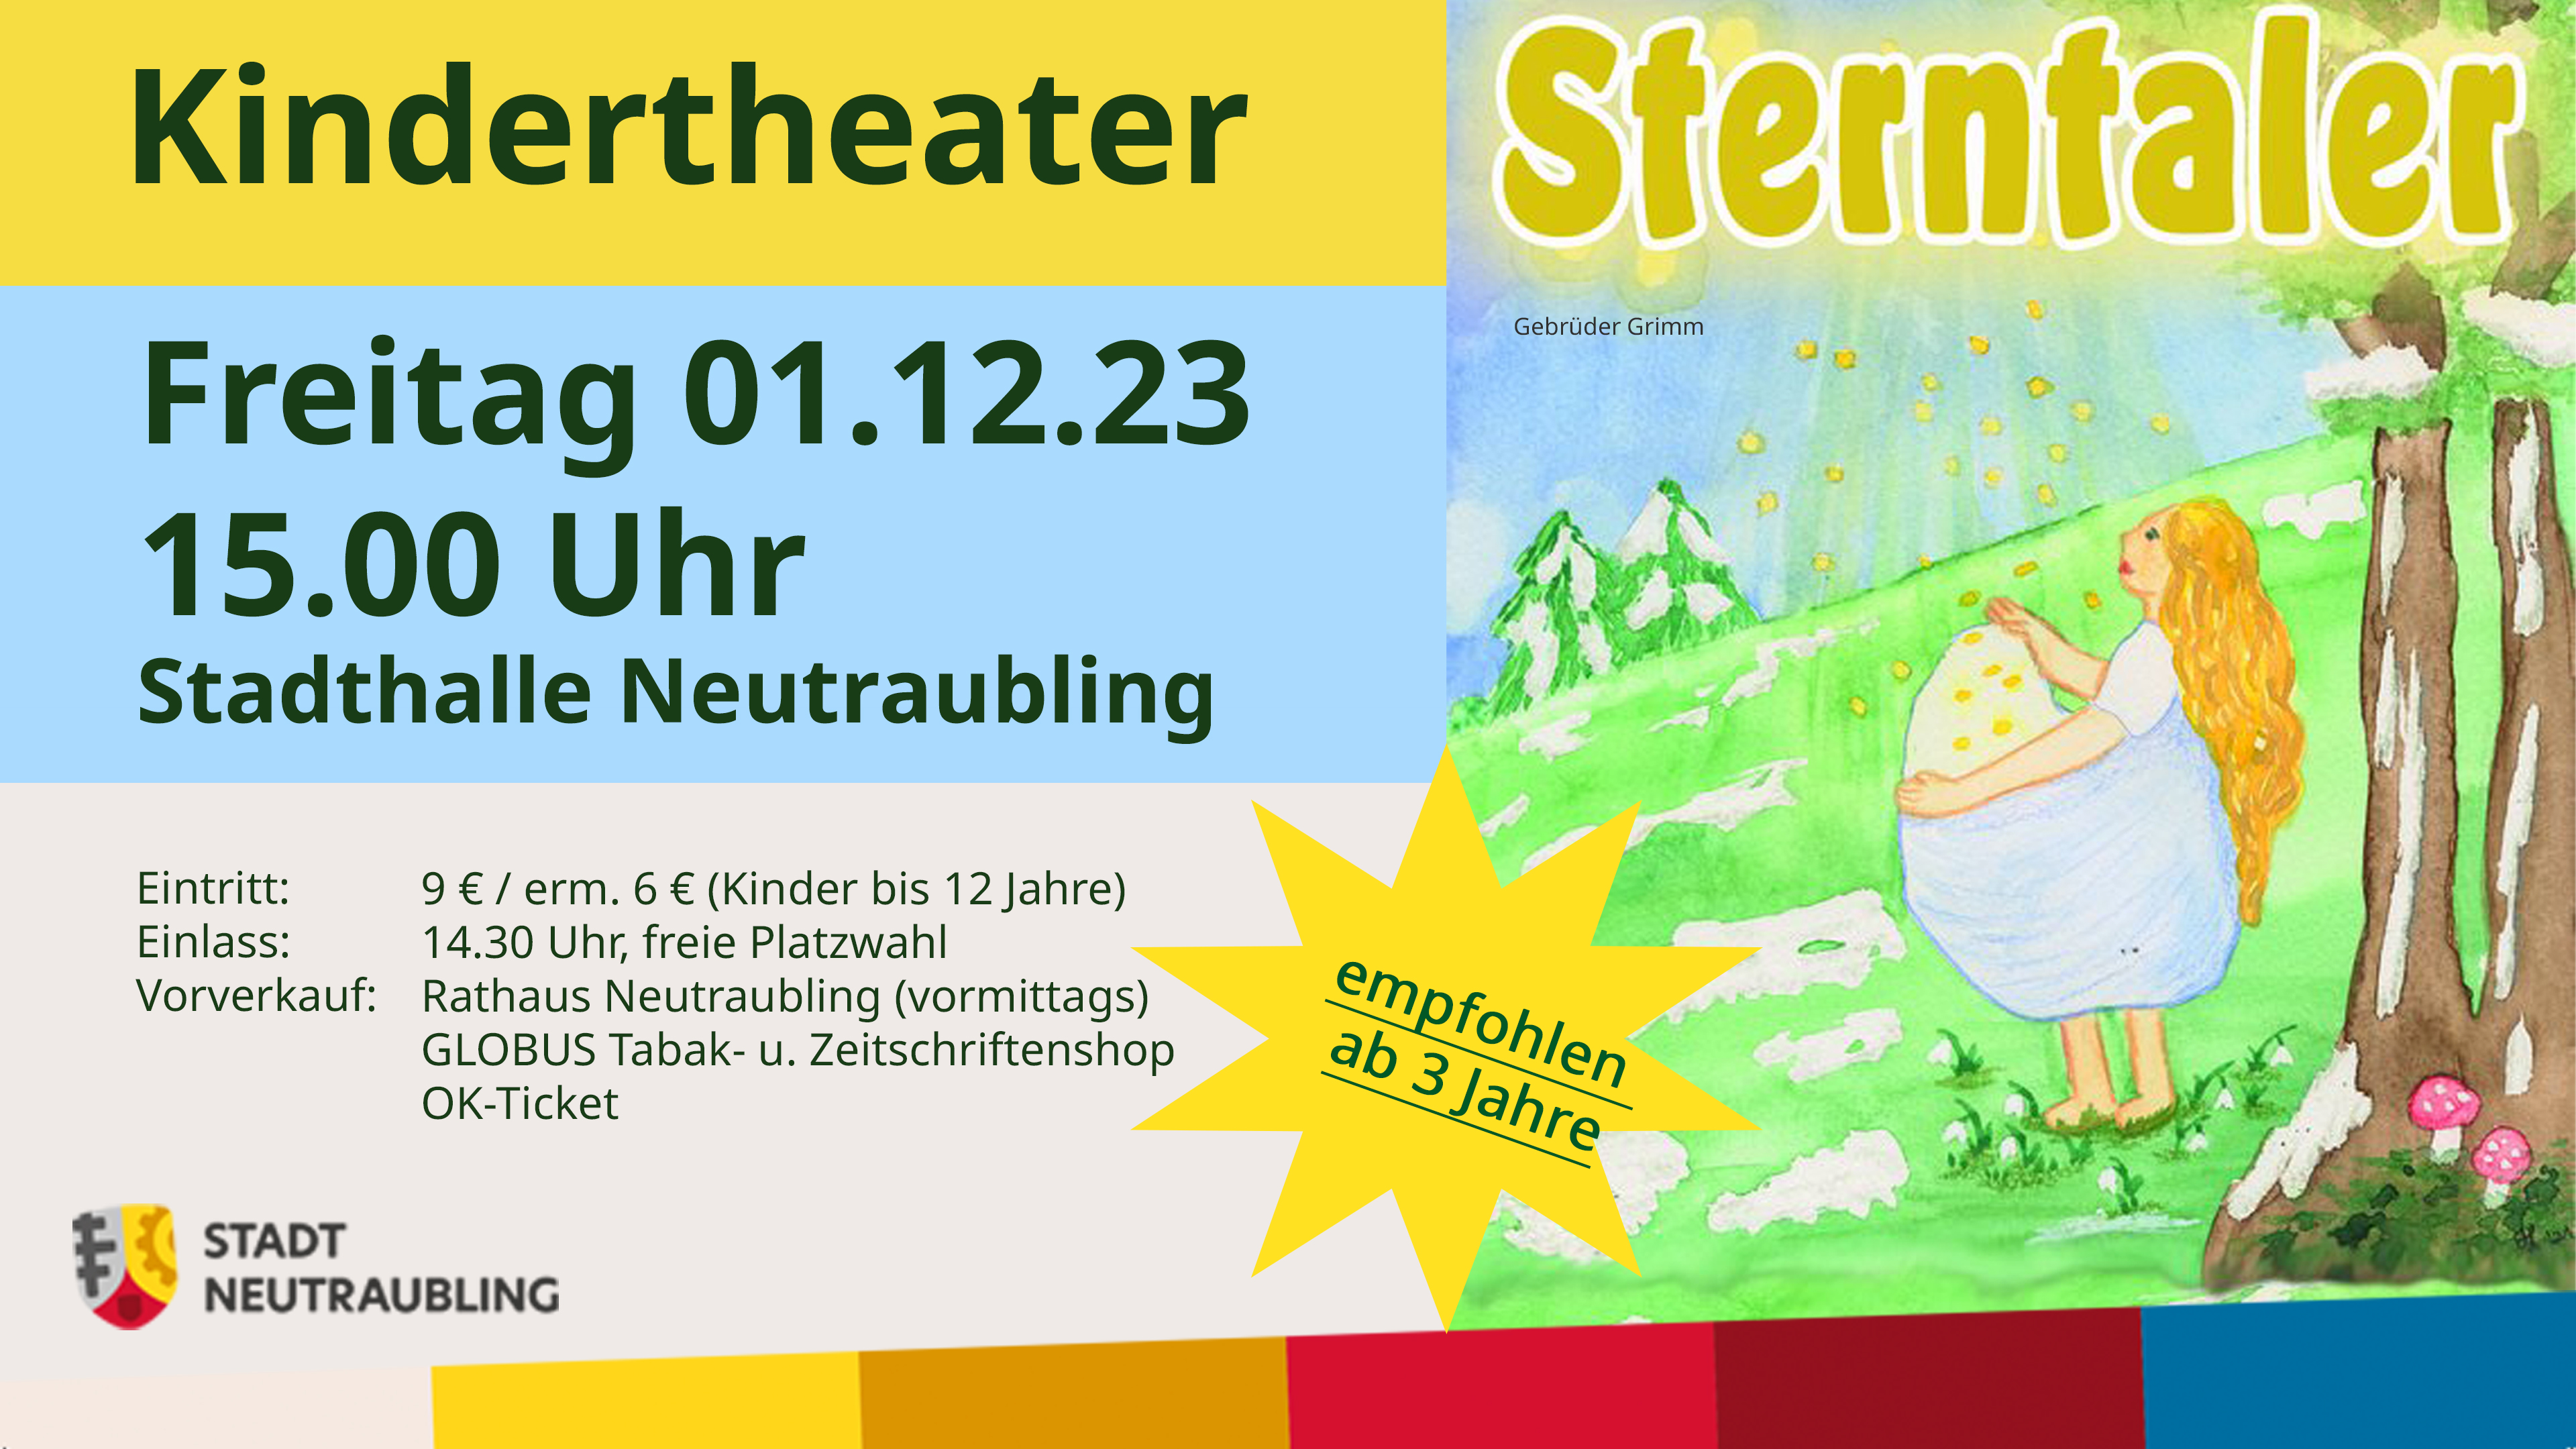 Sterntaler: Kindertheater in der Stadthalle